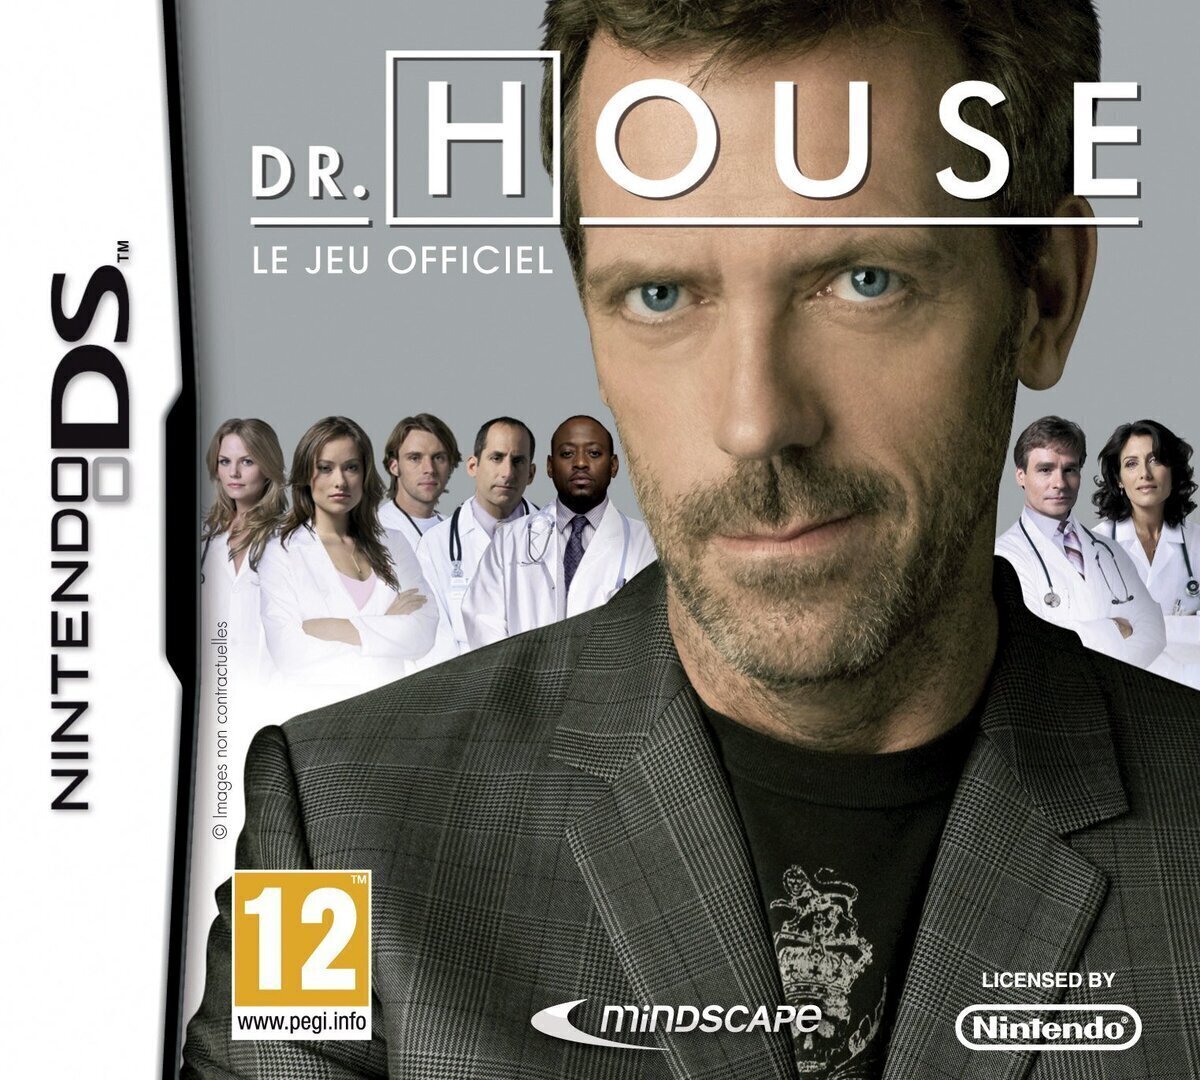 ¿Soy el único o alguien más no sabía que Doctor House tenía un juego para la Nintendo DS? Por @madaf